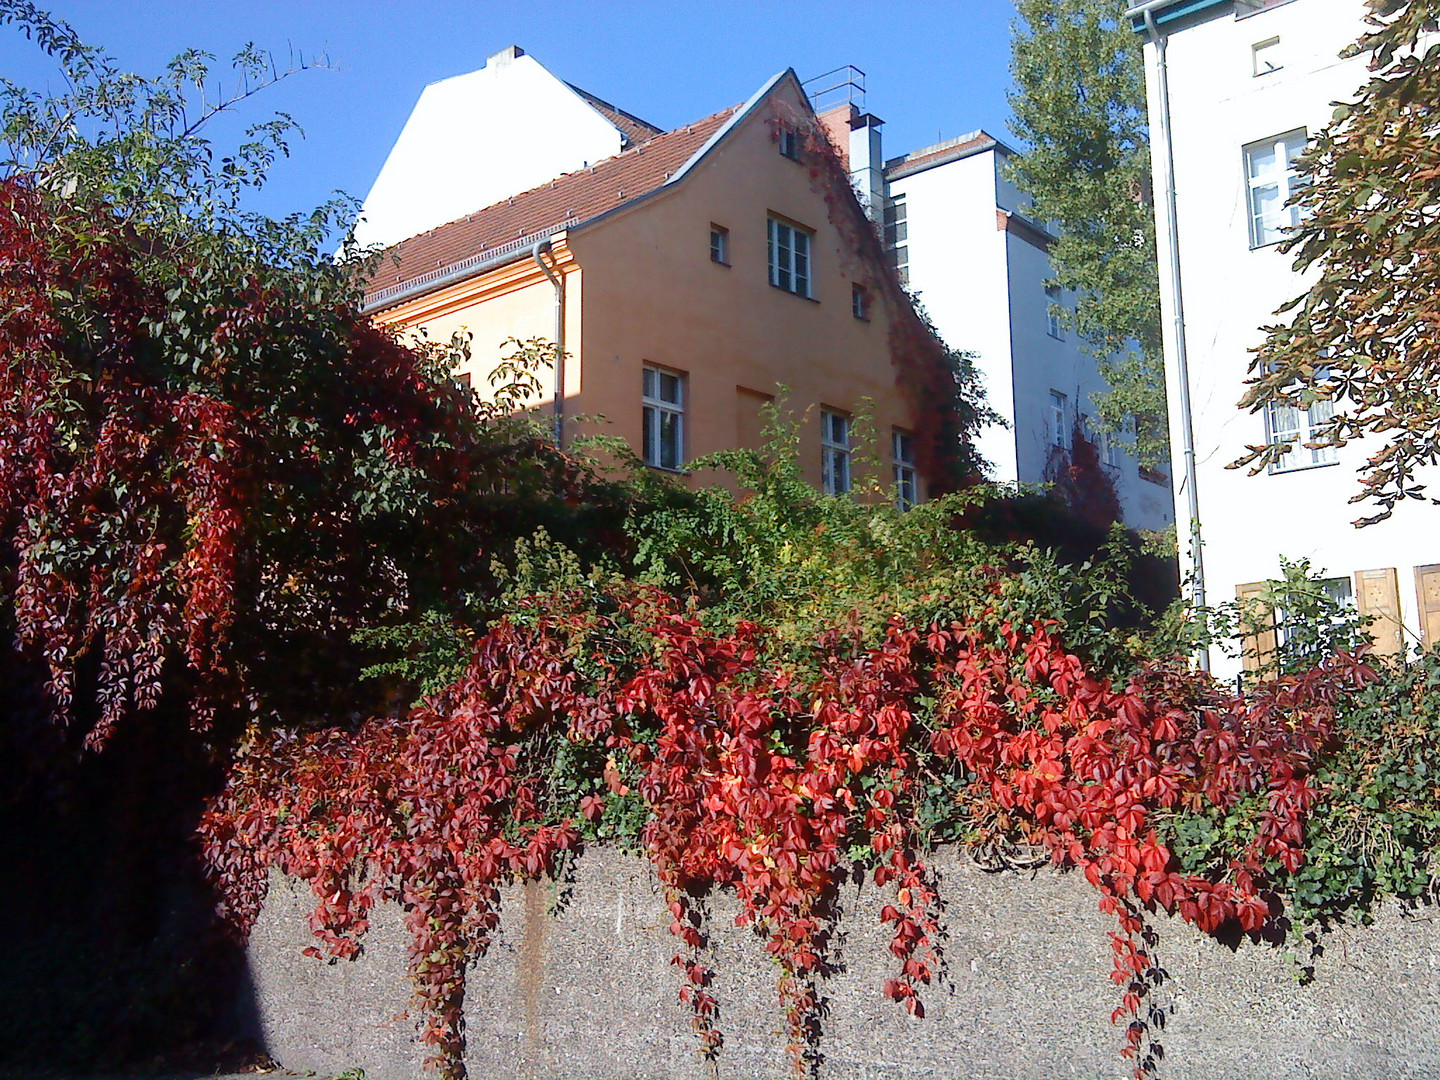 Herbst in Spandau